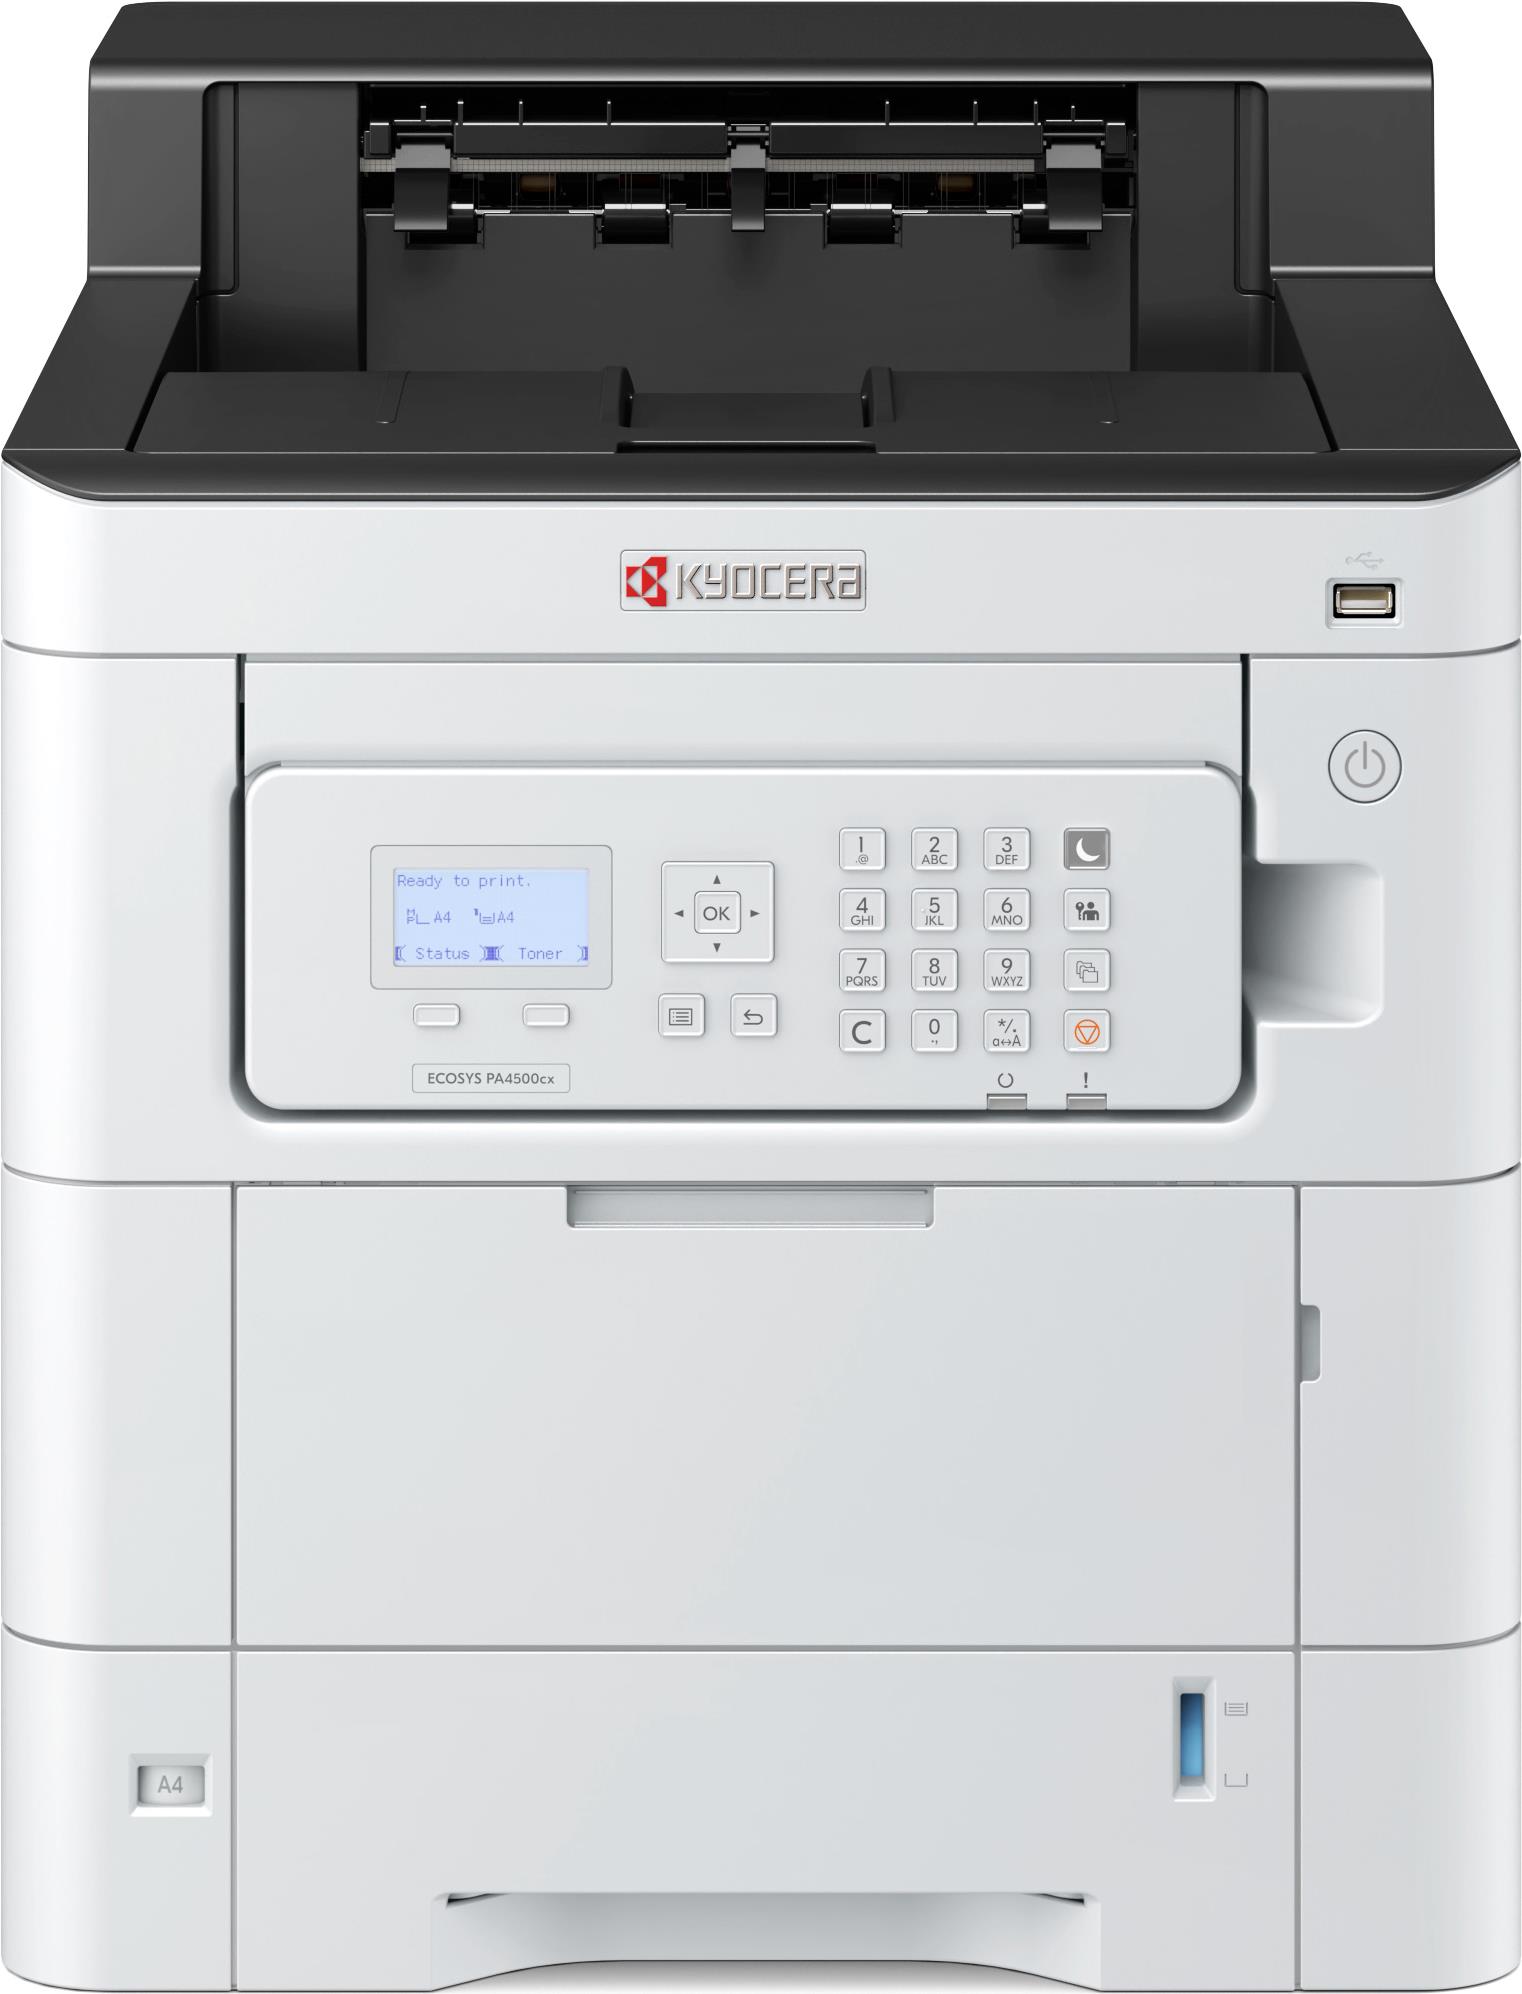 KYOCERA ECOSYS PA4500cx Printer A4 Färg 45ppm Farbe 1200 x 1200 DPI (1102Z13NL0)